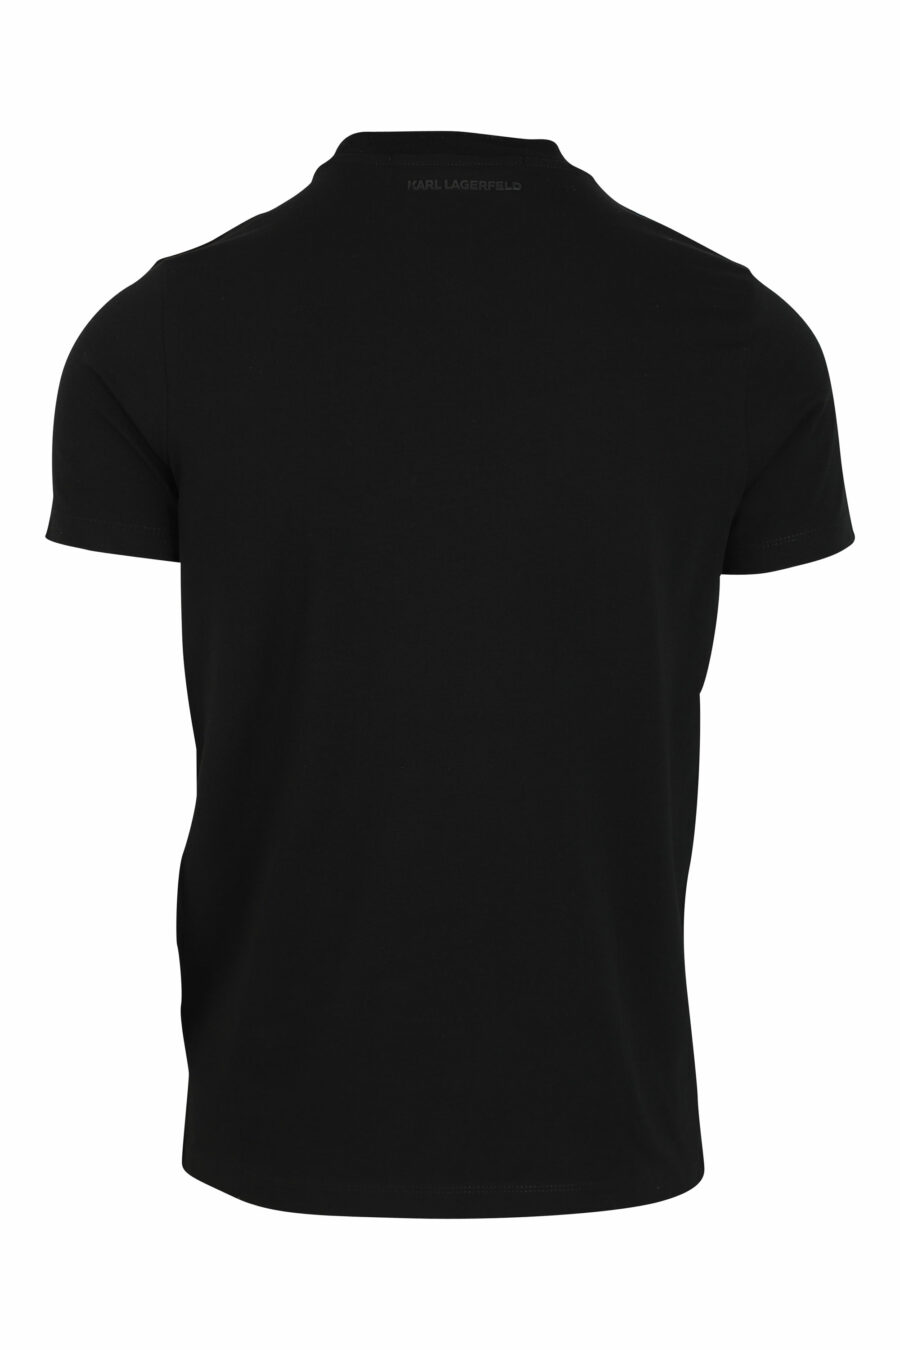 Camiseta negra con maxilogo en silueta azul - 4062226292504 2